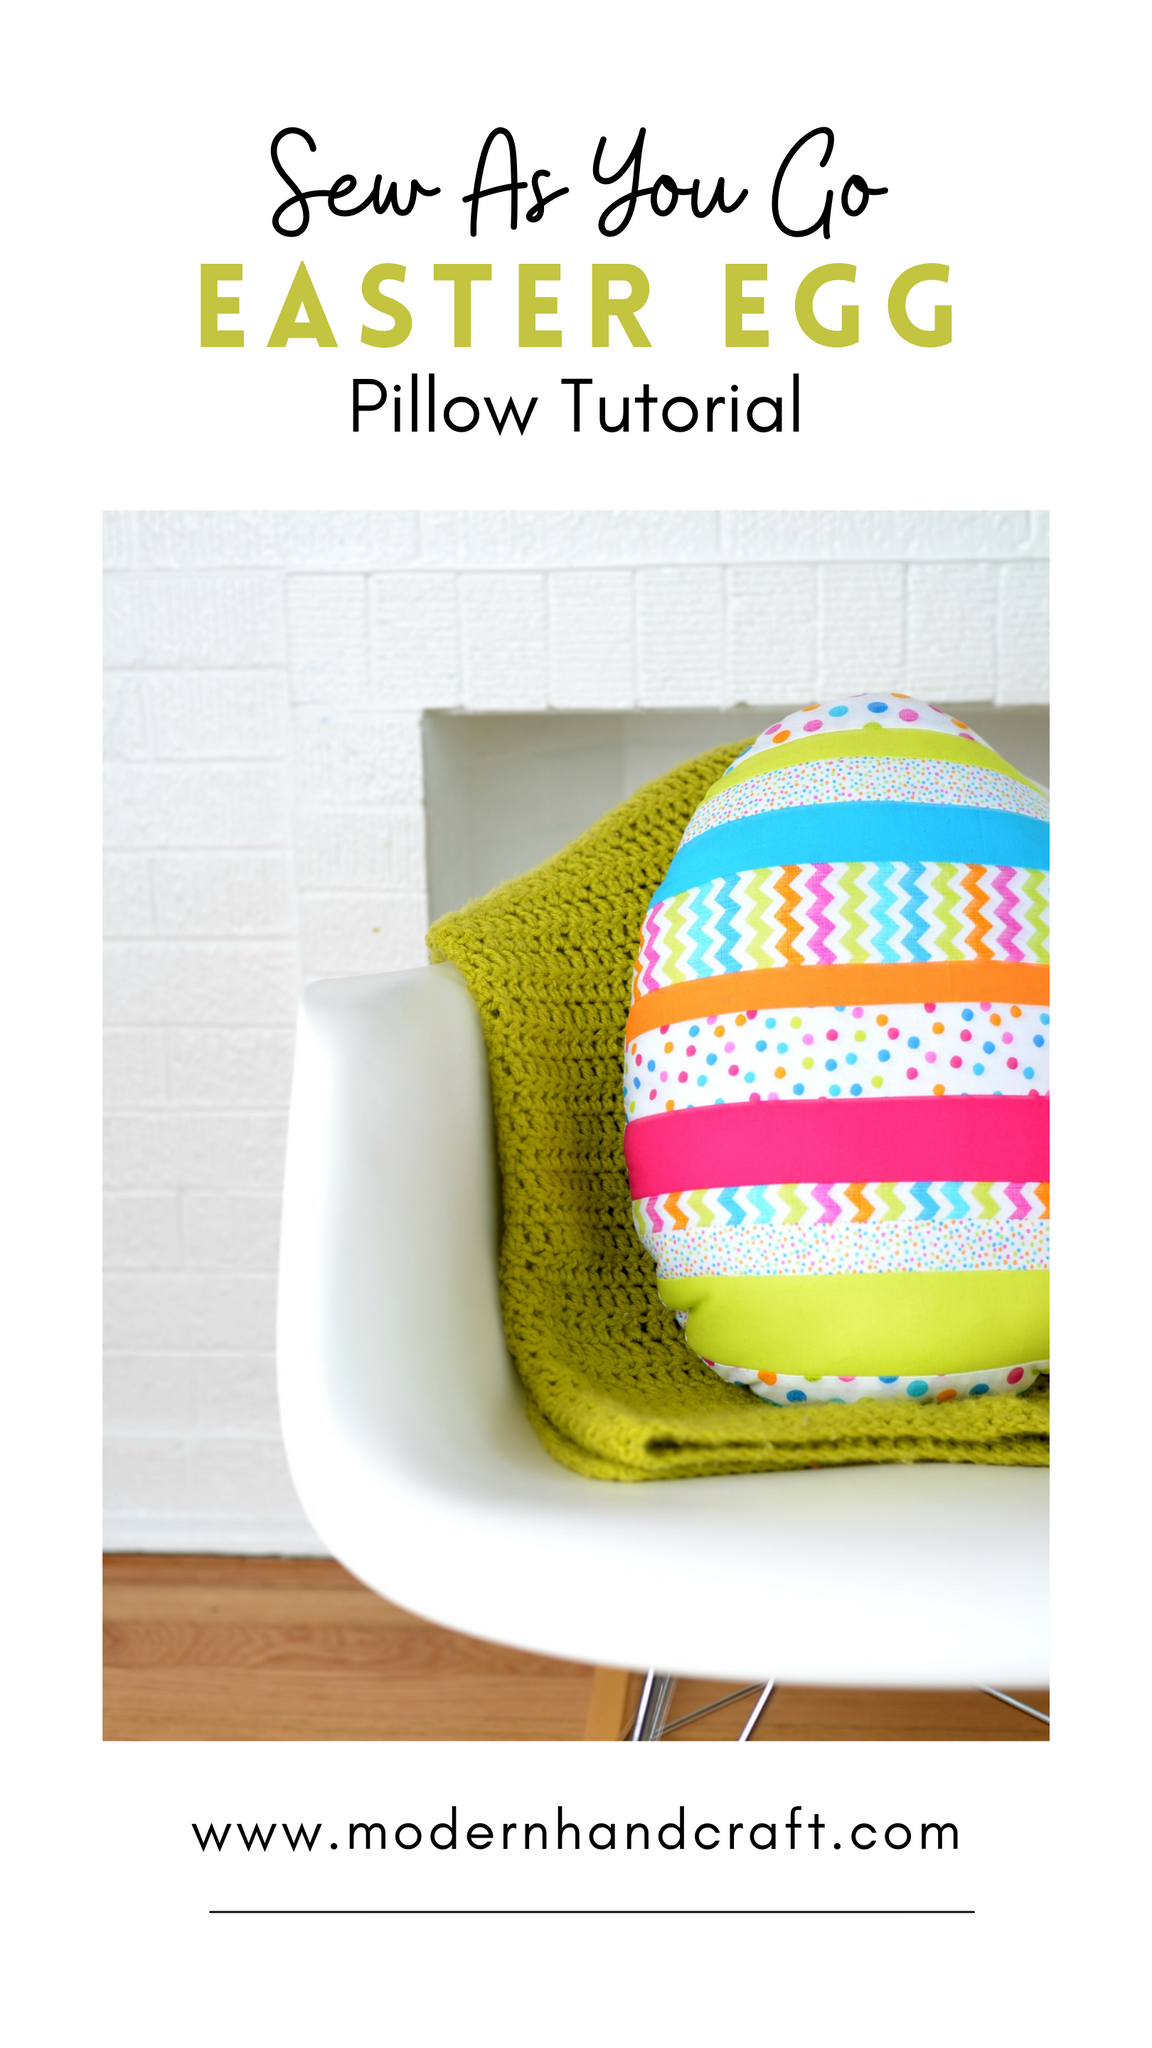 Sew As You Go Easter Egg Pillow / Tutorial by Modernhandcraft.com